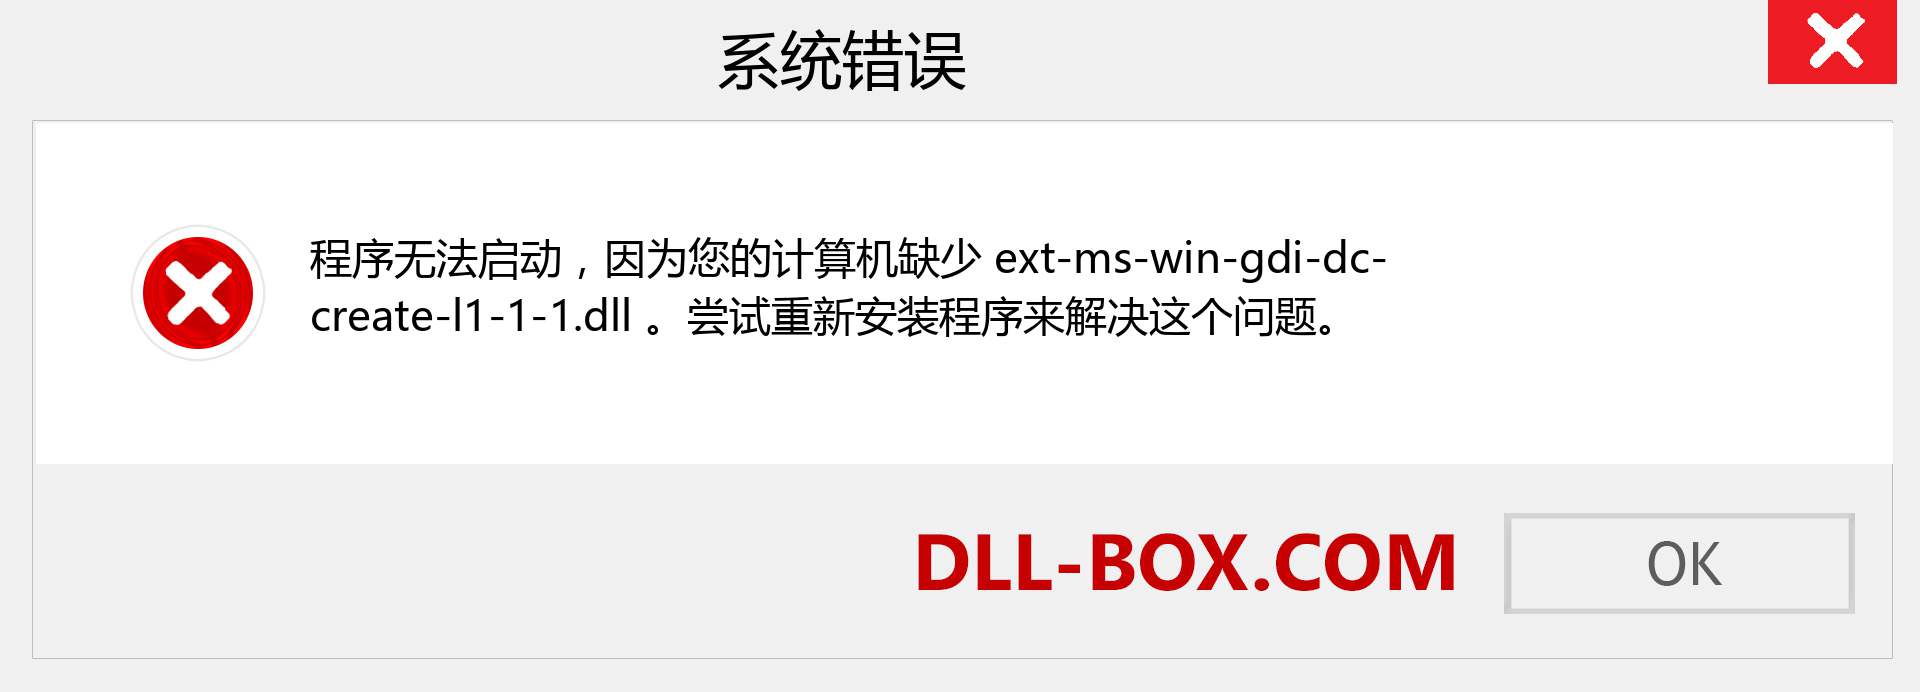 ext-ms-win-gdi-dc-create-l1-1-1.dll 文件丢失？。 适用于 Windows 7、8、10 的下载 - 修复 Windows、照片、图像上的 ext-ms-win-gdi-dc-create-l1-1-1 dll 丢失错误